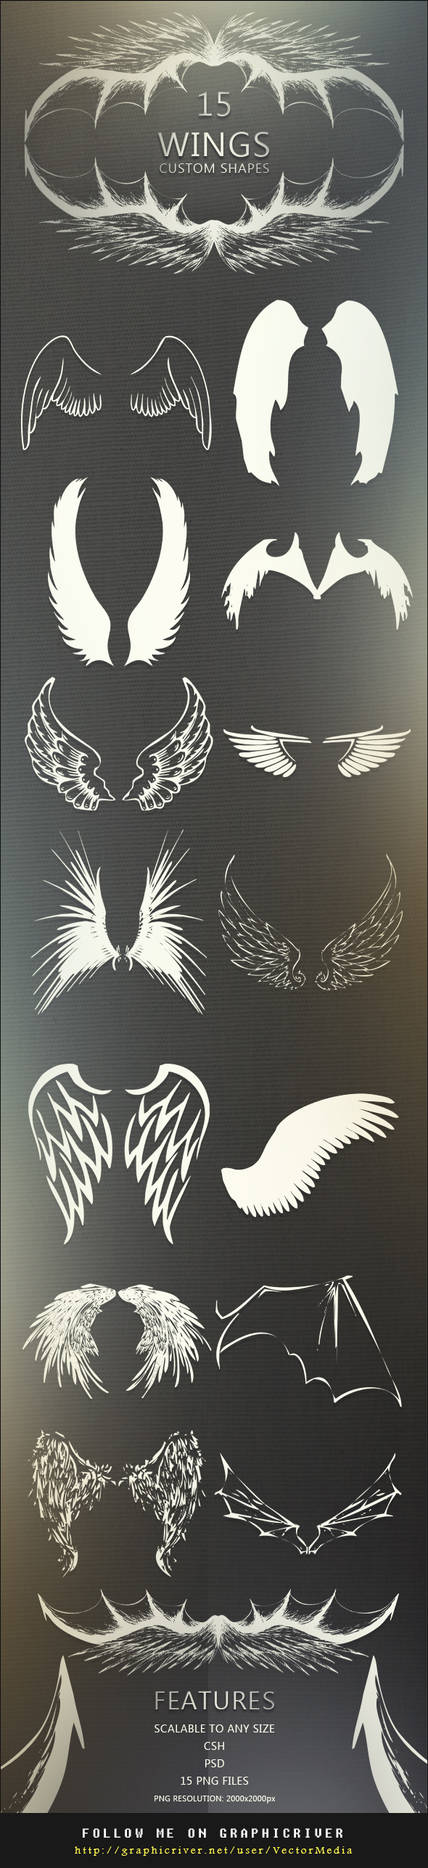 15 Wings - Custom Shapes